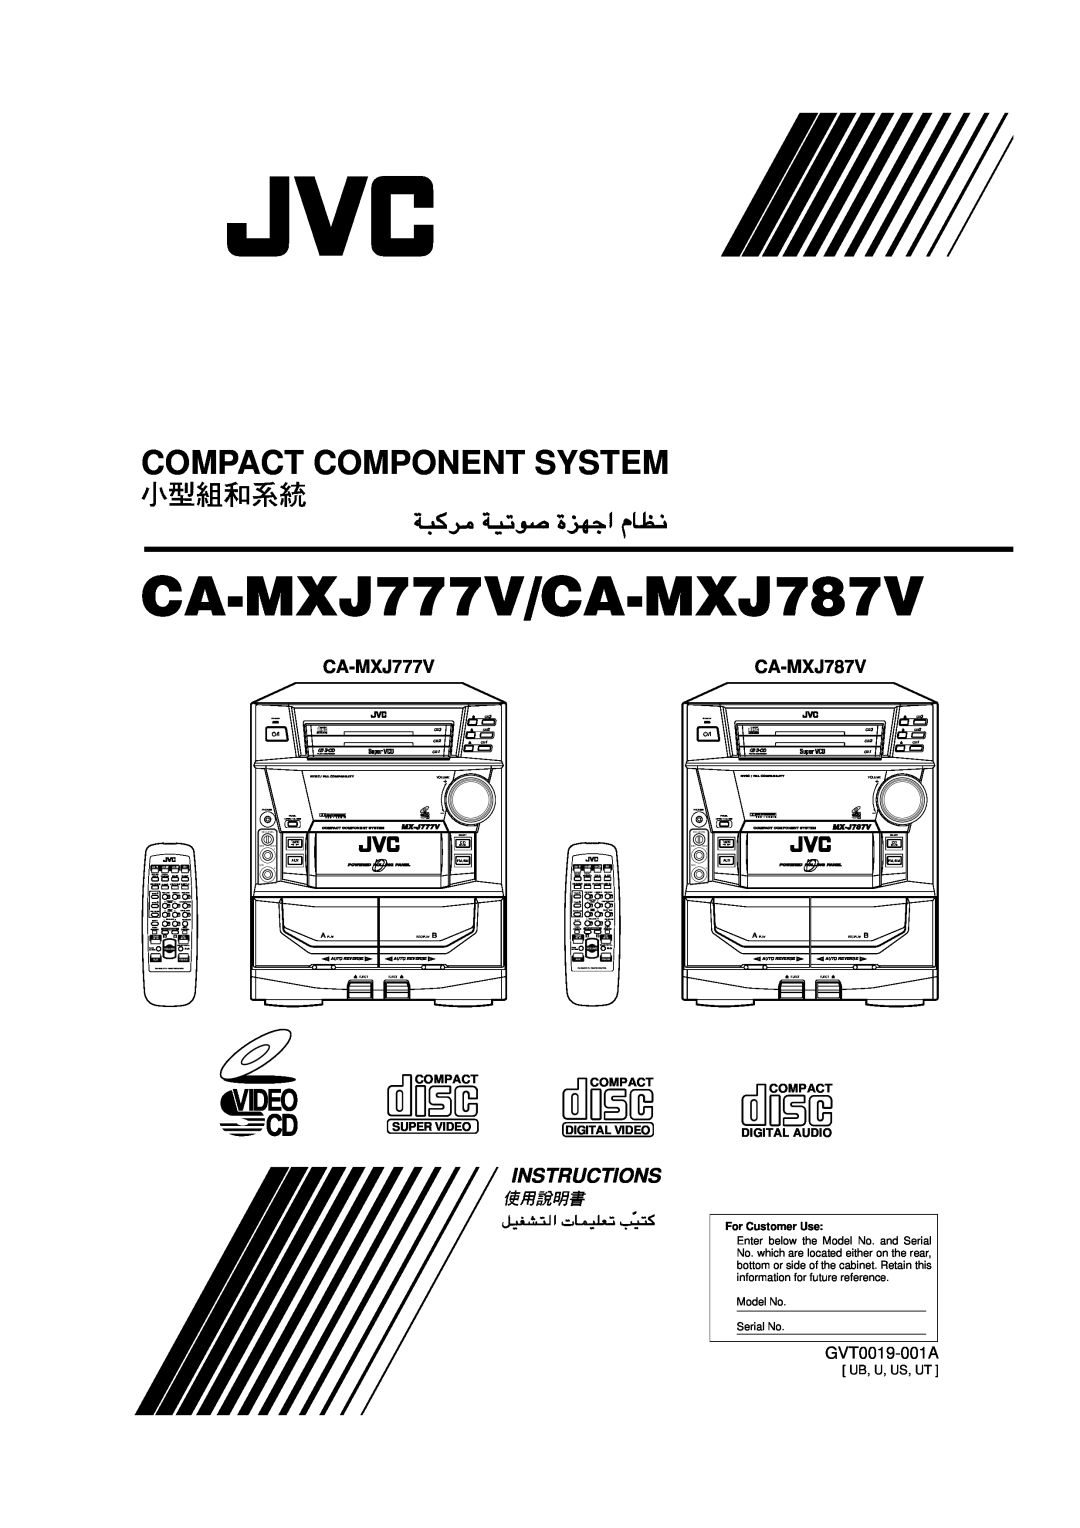 JVC manual Compact Component System, CA-MXJ777V/CA-MXJ787V, Instructions, Compactcompact, Super Video, Digital Video 